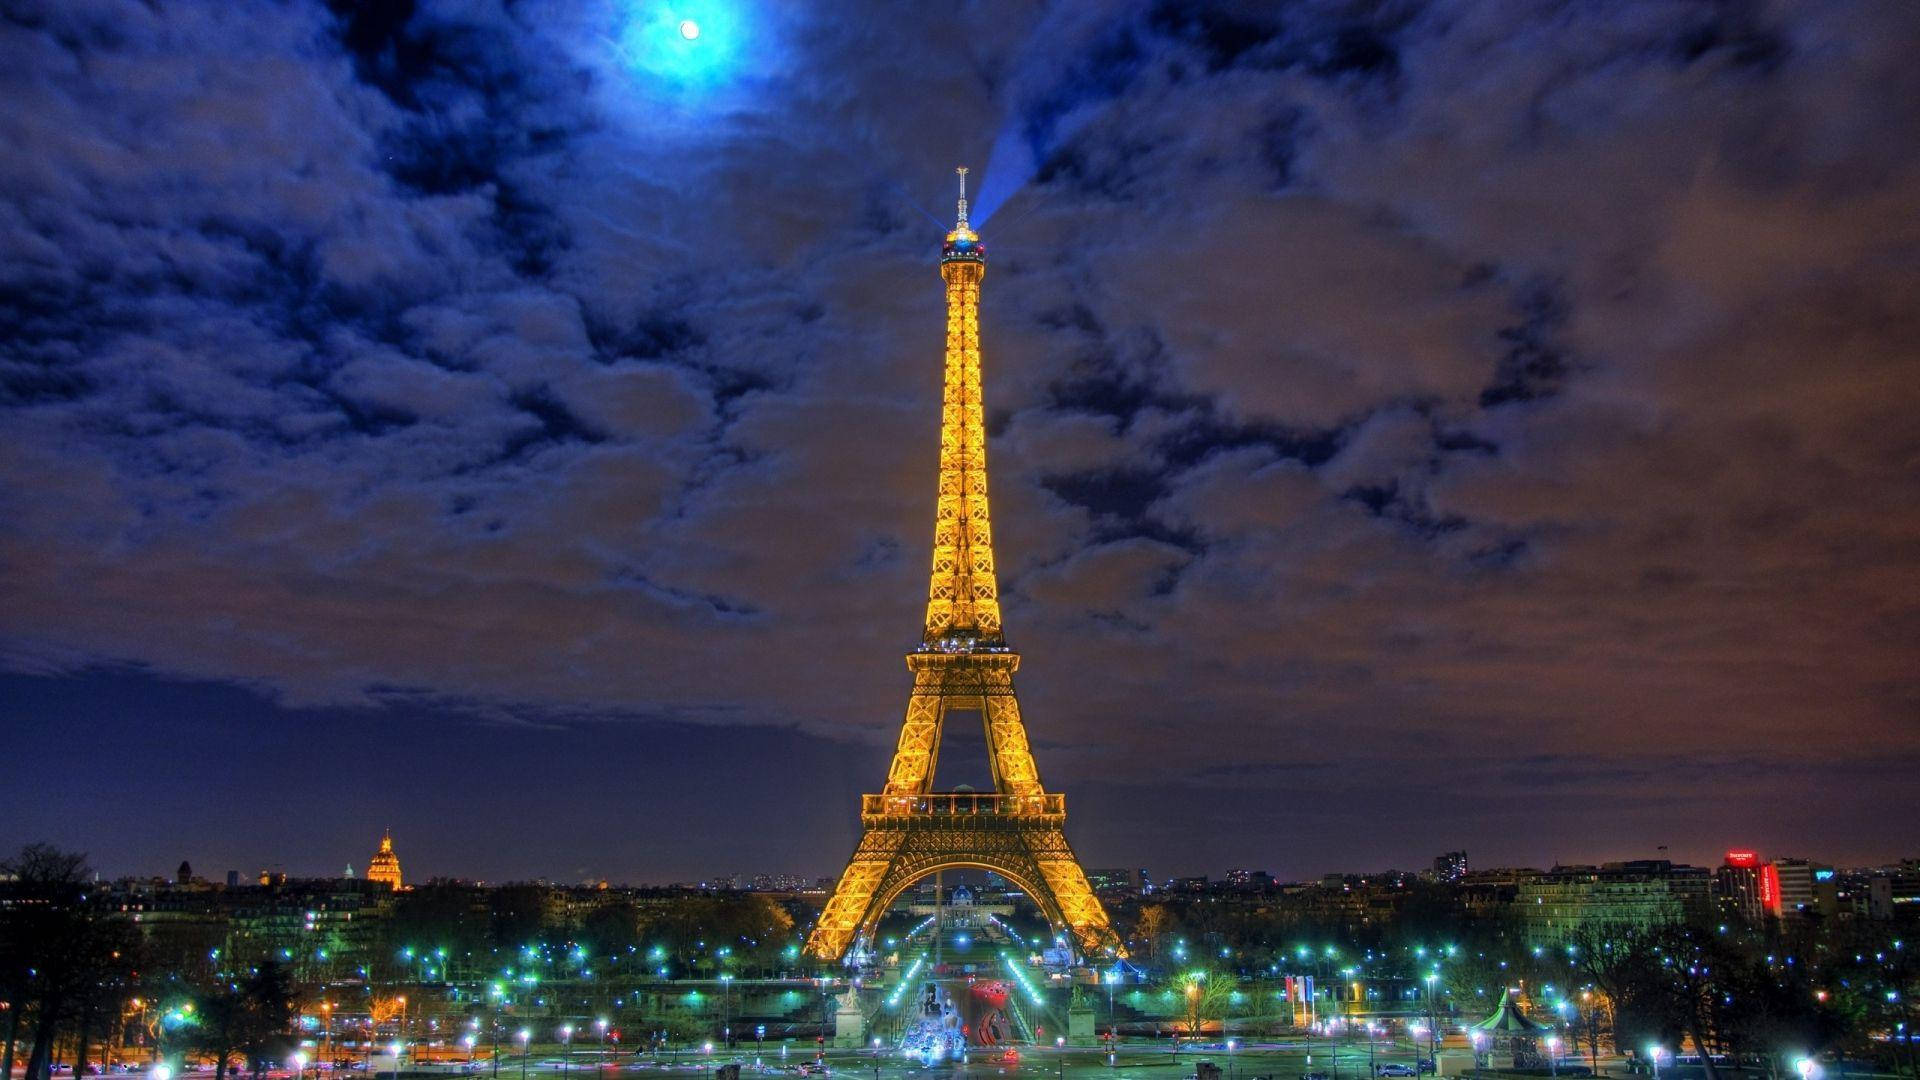 Visuellttilltalande Eiffeltornet På Natten. Wallpaper